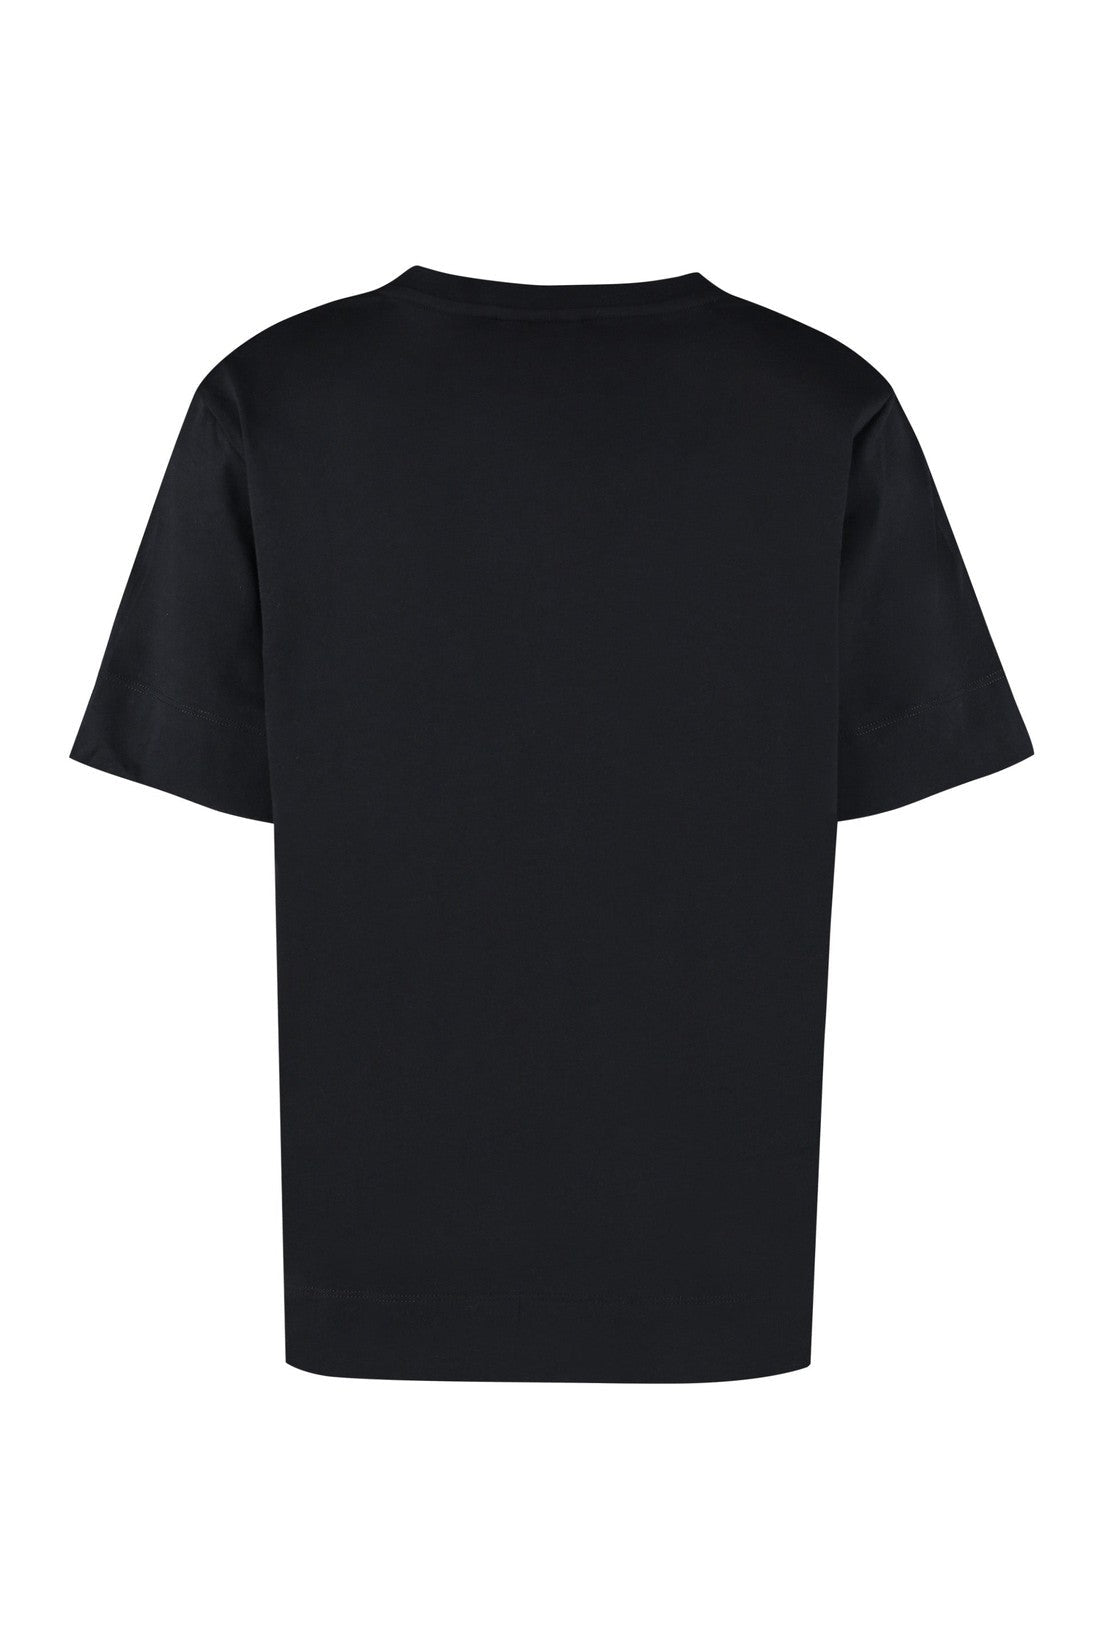 GANNI-OUTLET-SALE-Cotton T-shirt-ARCHIVIST